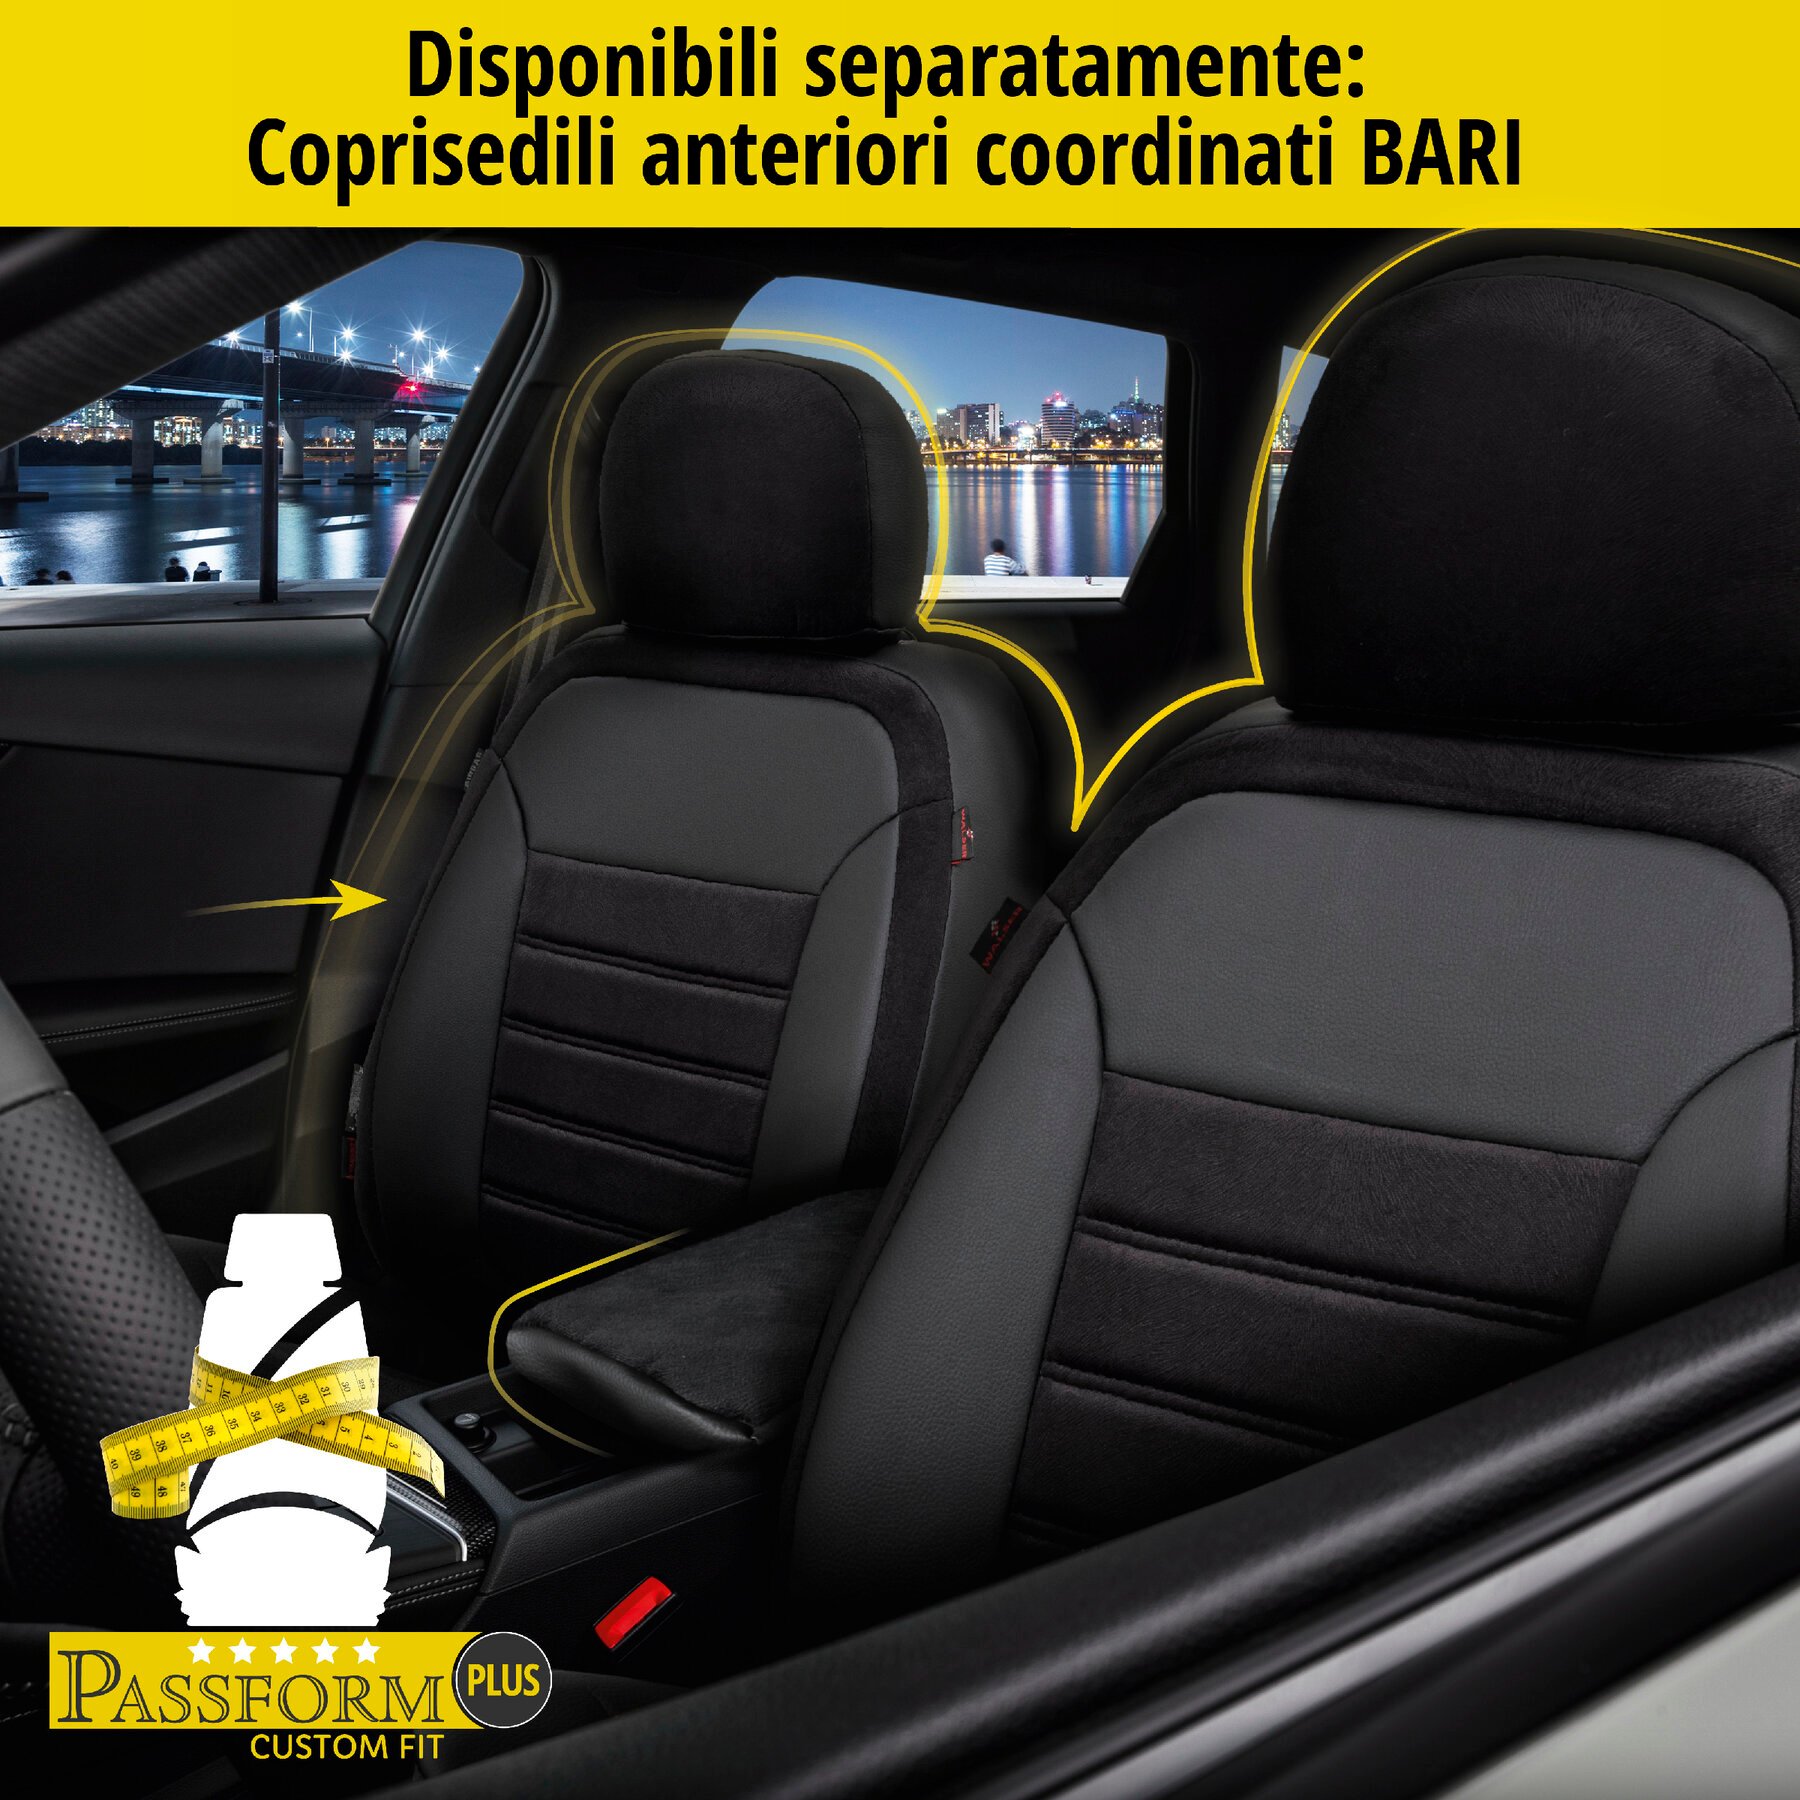 Coprisedili Bari per Fiat 500X 09/2014-Oggi, 1 coprisedili posteriore per sedili normali